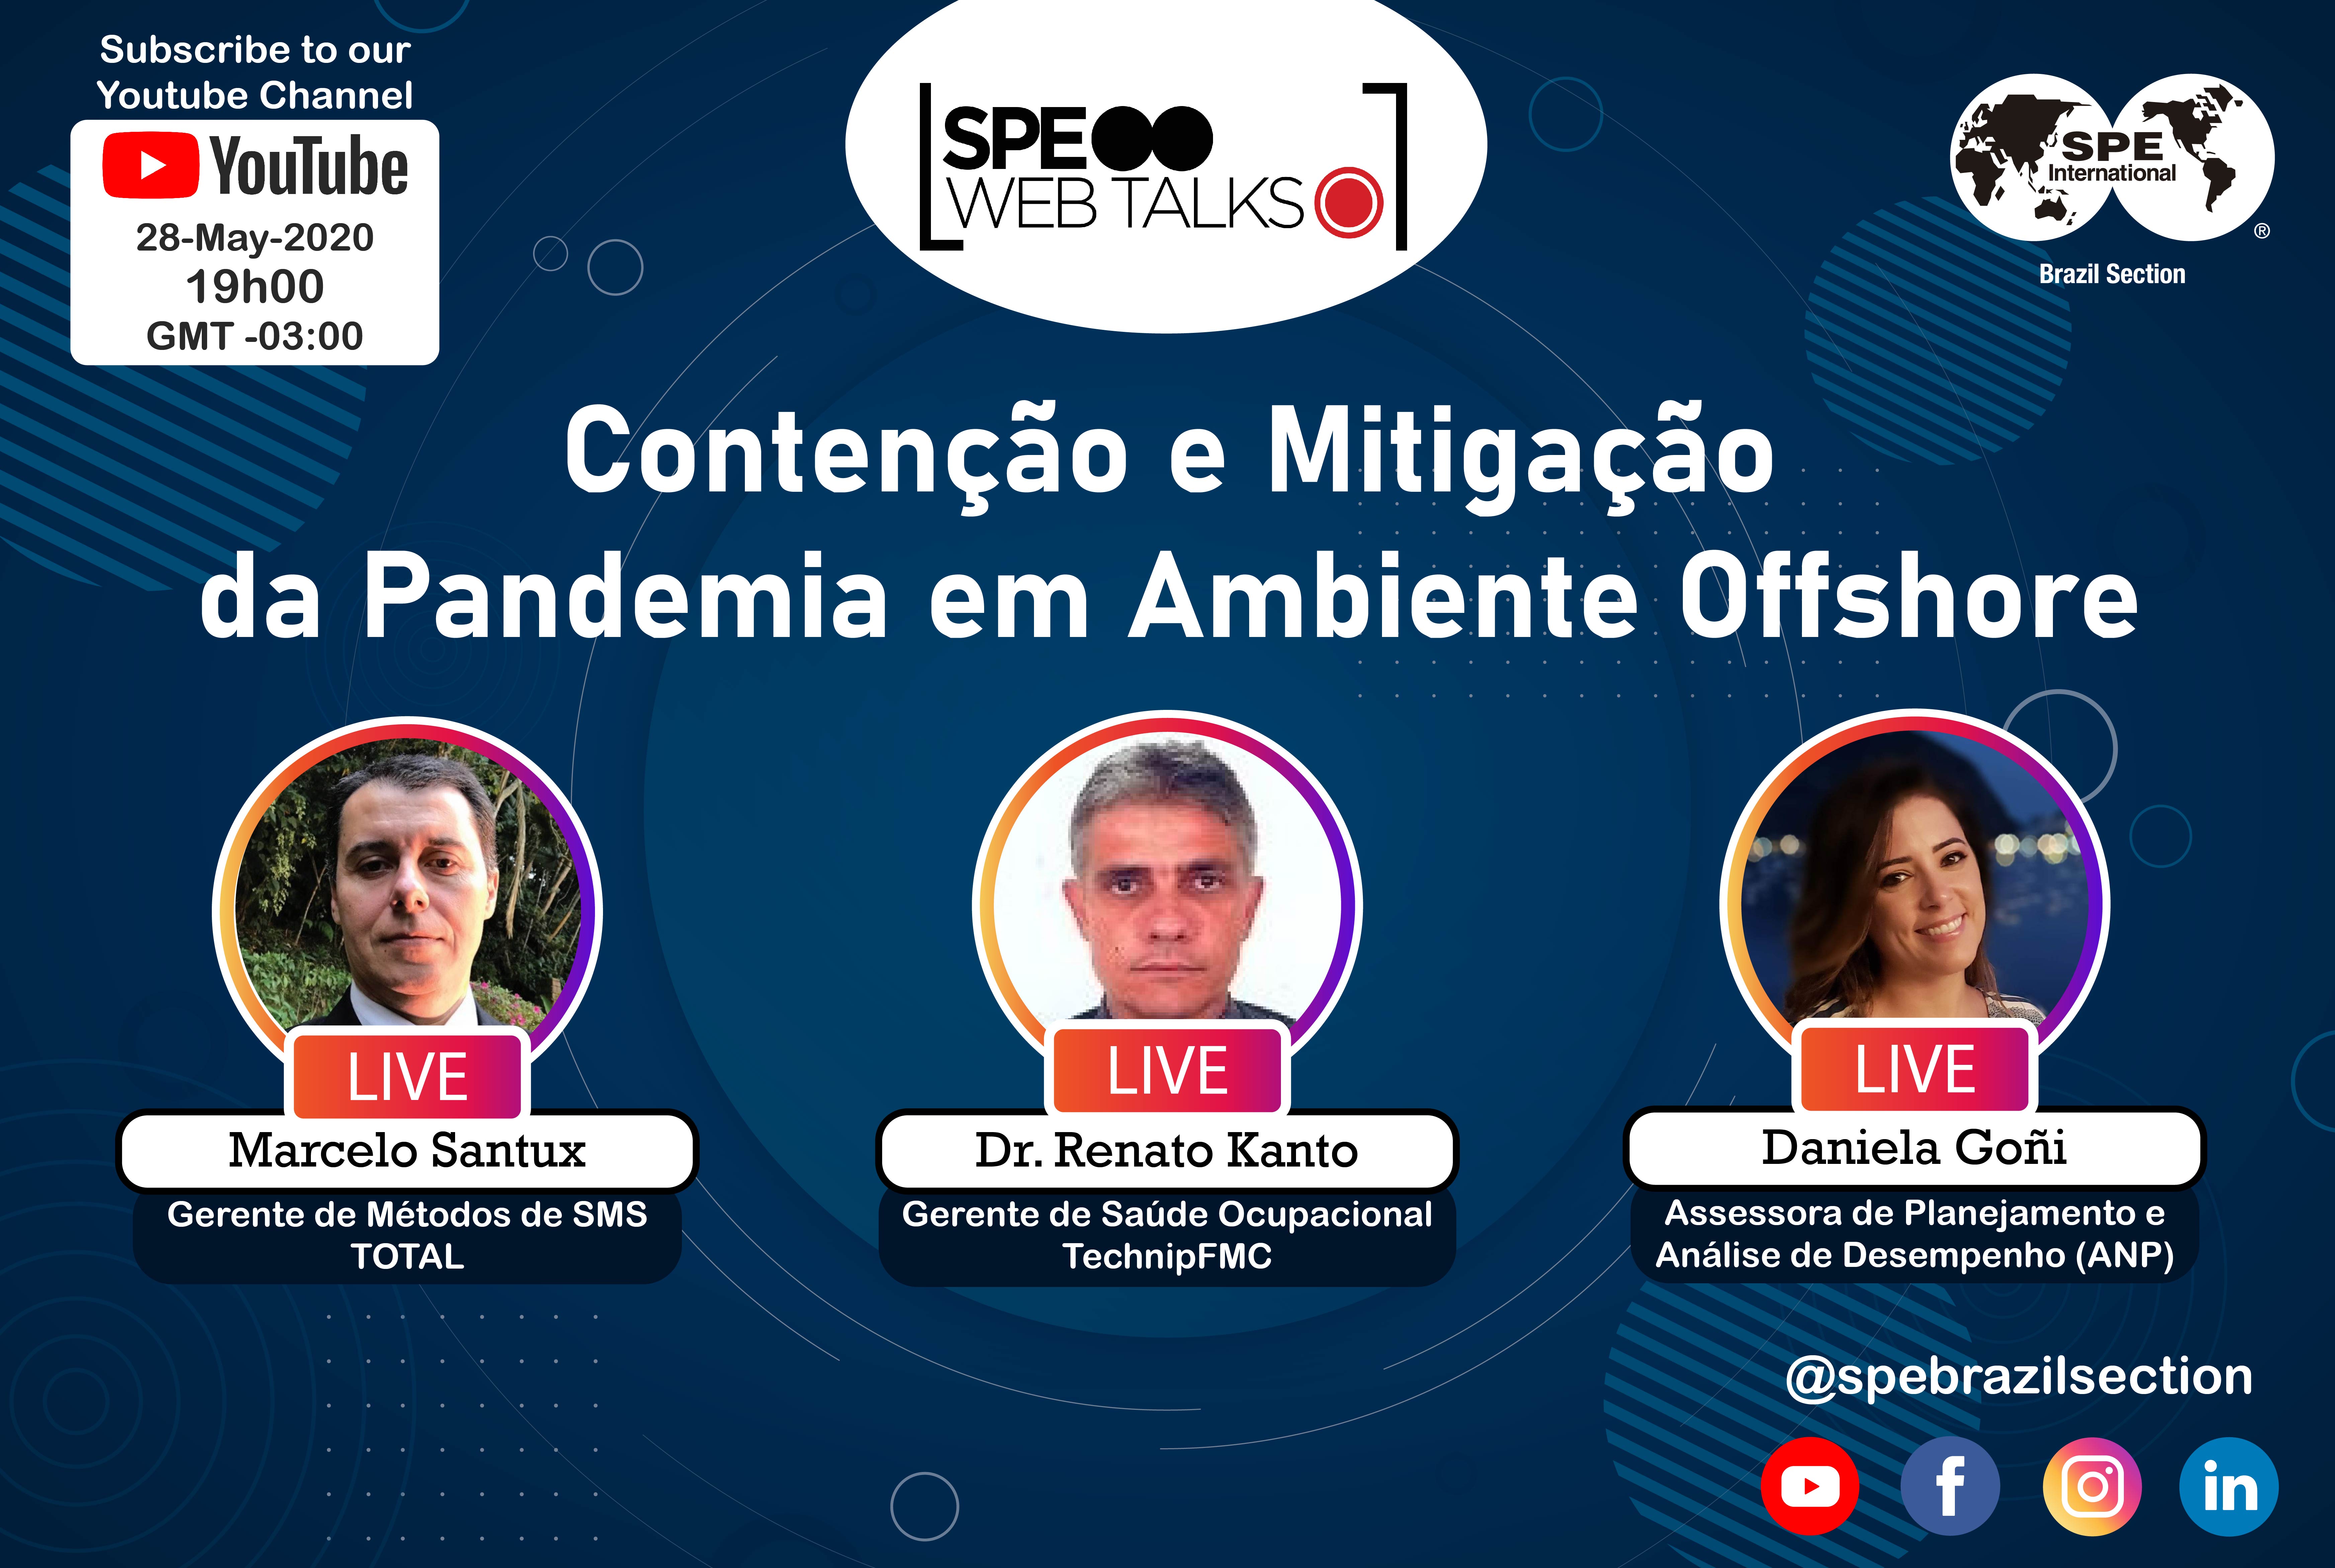 SPE Web Talks – Session #03: “Contenção e Mitigação da Pandemia em Offshore”